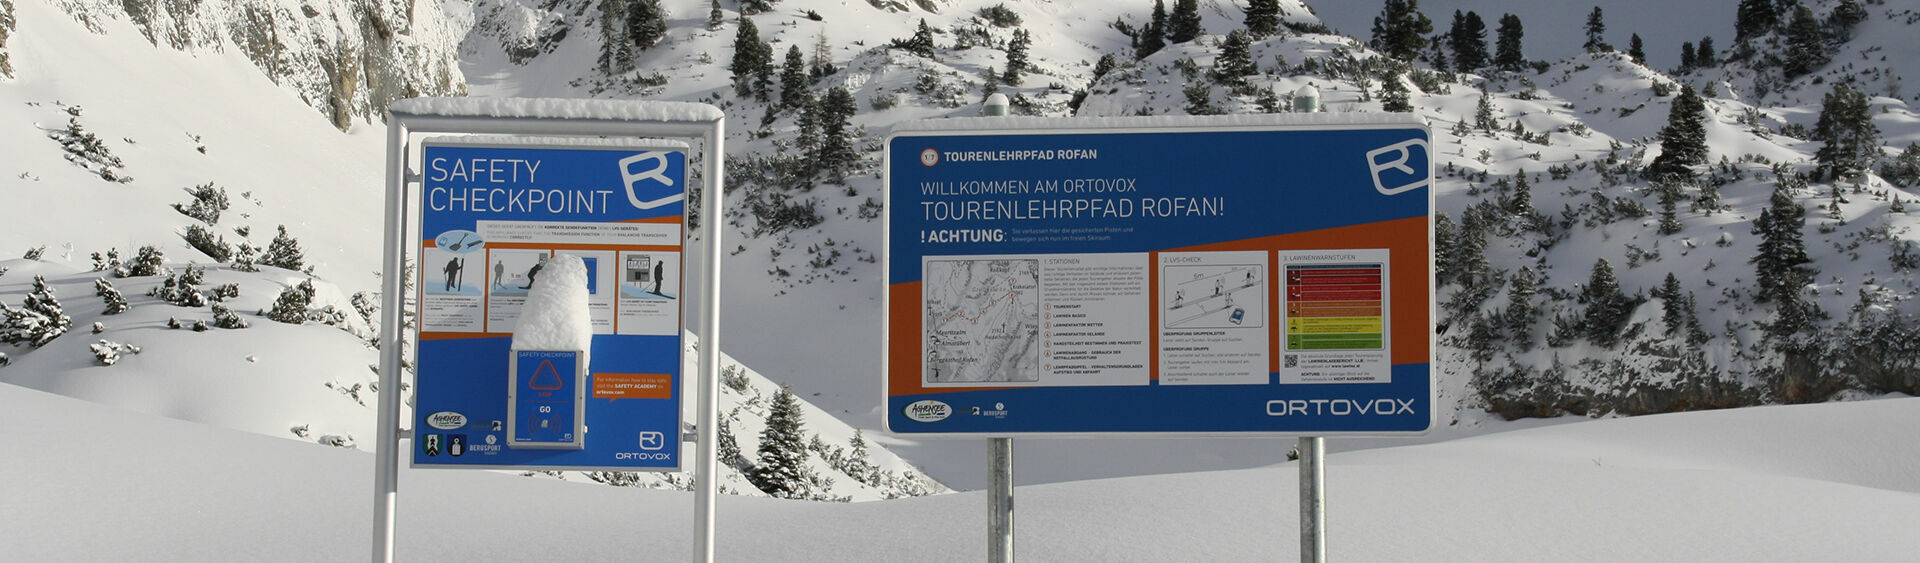 Der ORTOVOX Tourenlehrpfad in Maurach informiert an sieben Stationen über korrektes alpines Verhalten und den Umgang mit LVS-Gerät, Schaufel und Sonde.